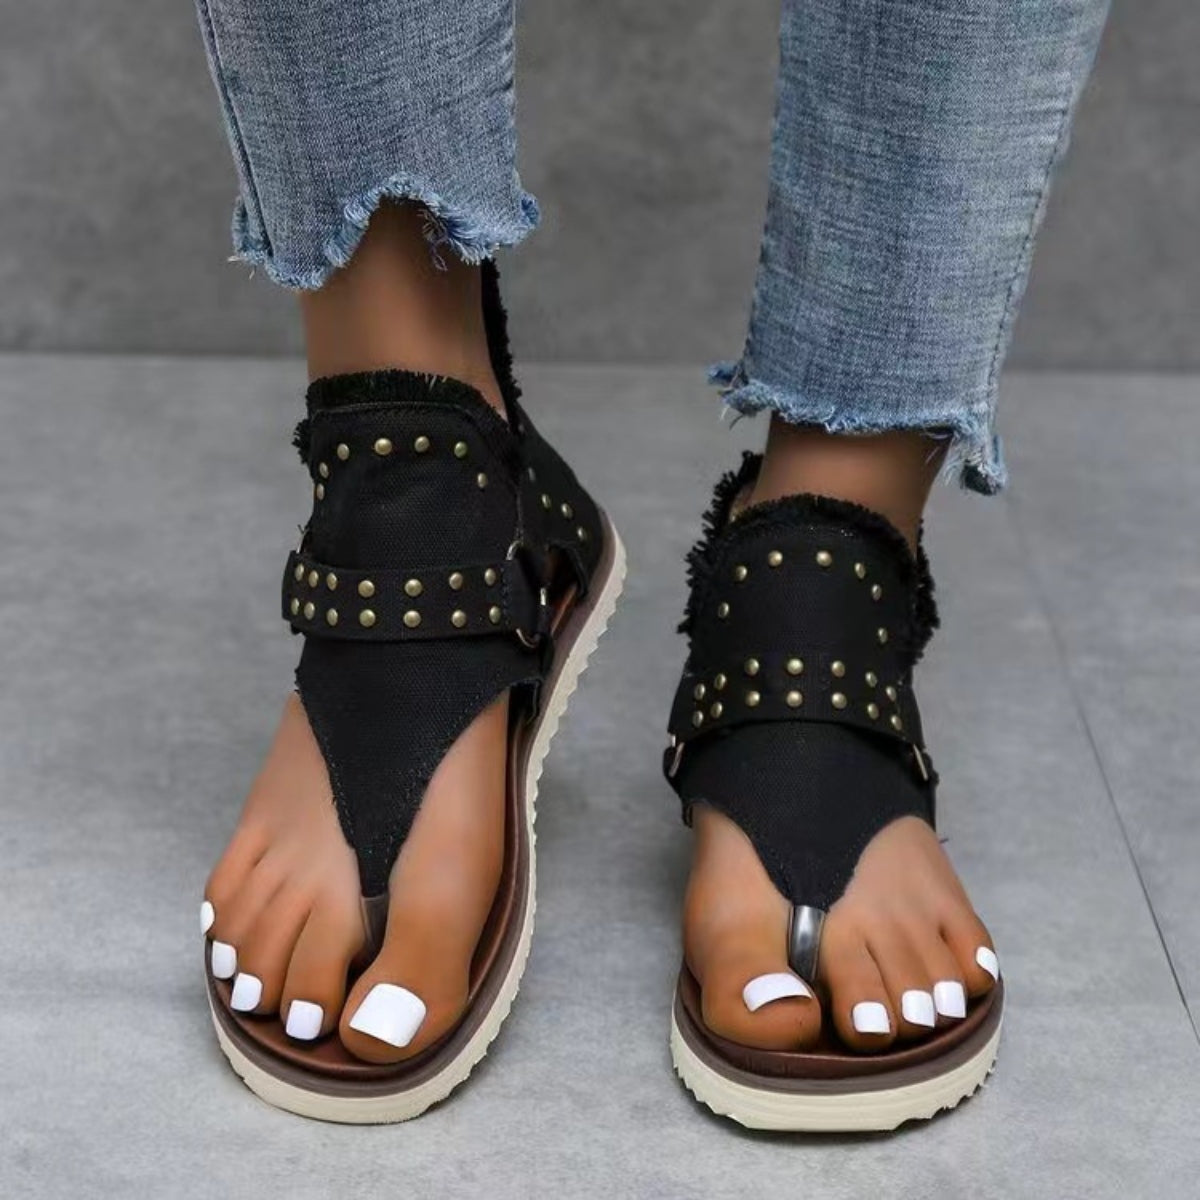 Studded Raw Hem Flat Sandals - Dark / 36(US5) Wynter 4 All Seasons